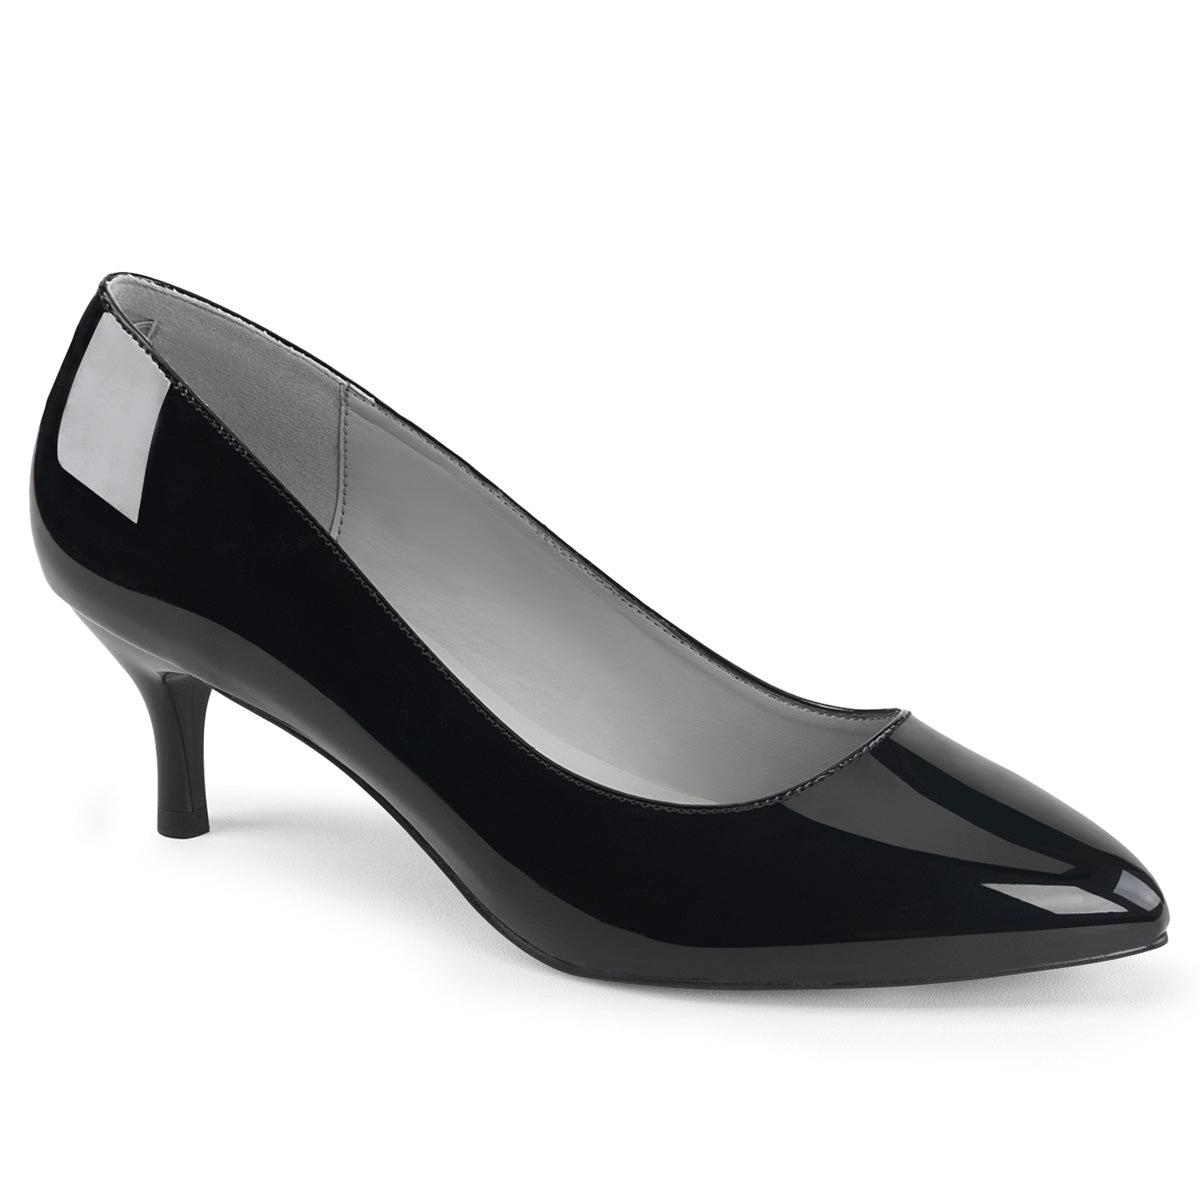 KITTEN-01 Large Size Ladies Shoes 2.5" Heel Black Patent Fetish Footwear